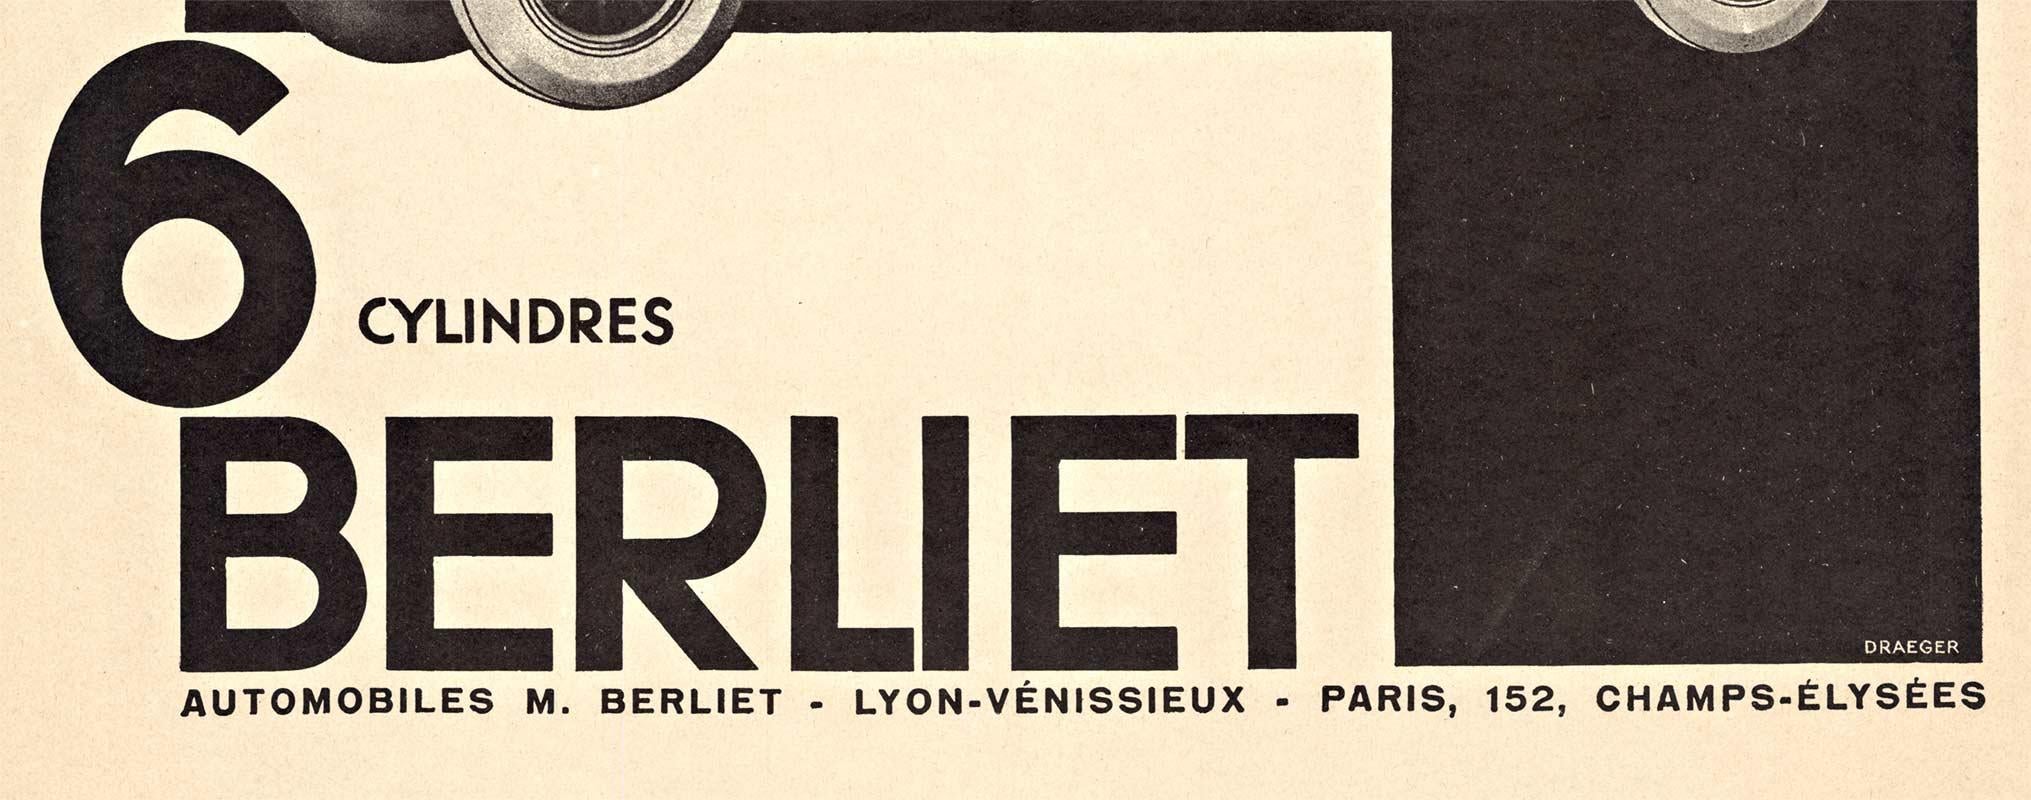 Original 6 Cylindres Berliet Auto schwarz-weißes Vintage-Poster – Print von Draeger